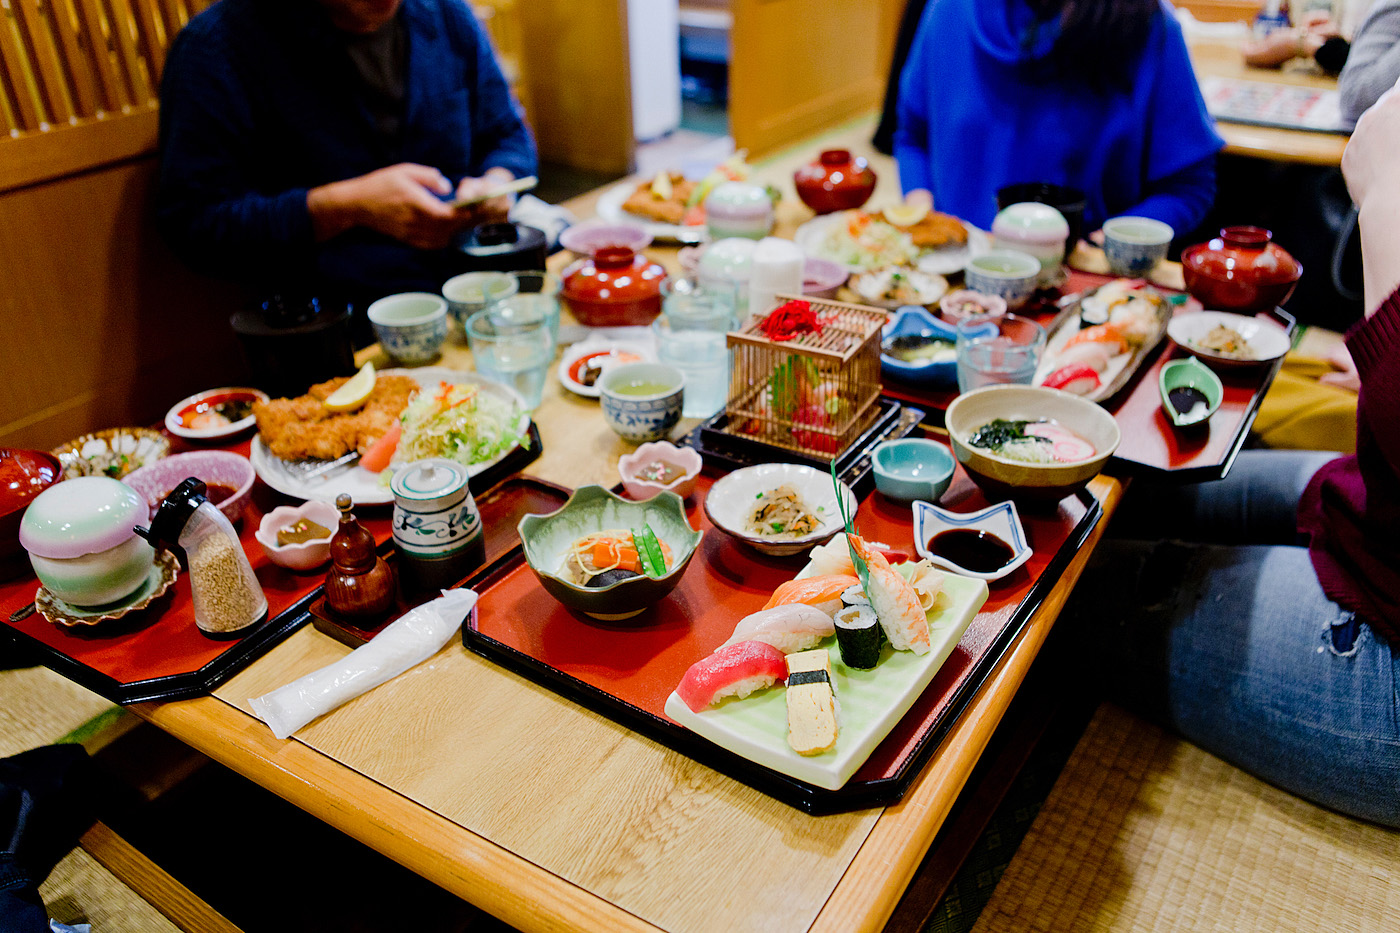 The golden bun - okinawa restaurant guide - fish on okinawa 